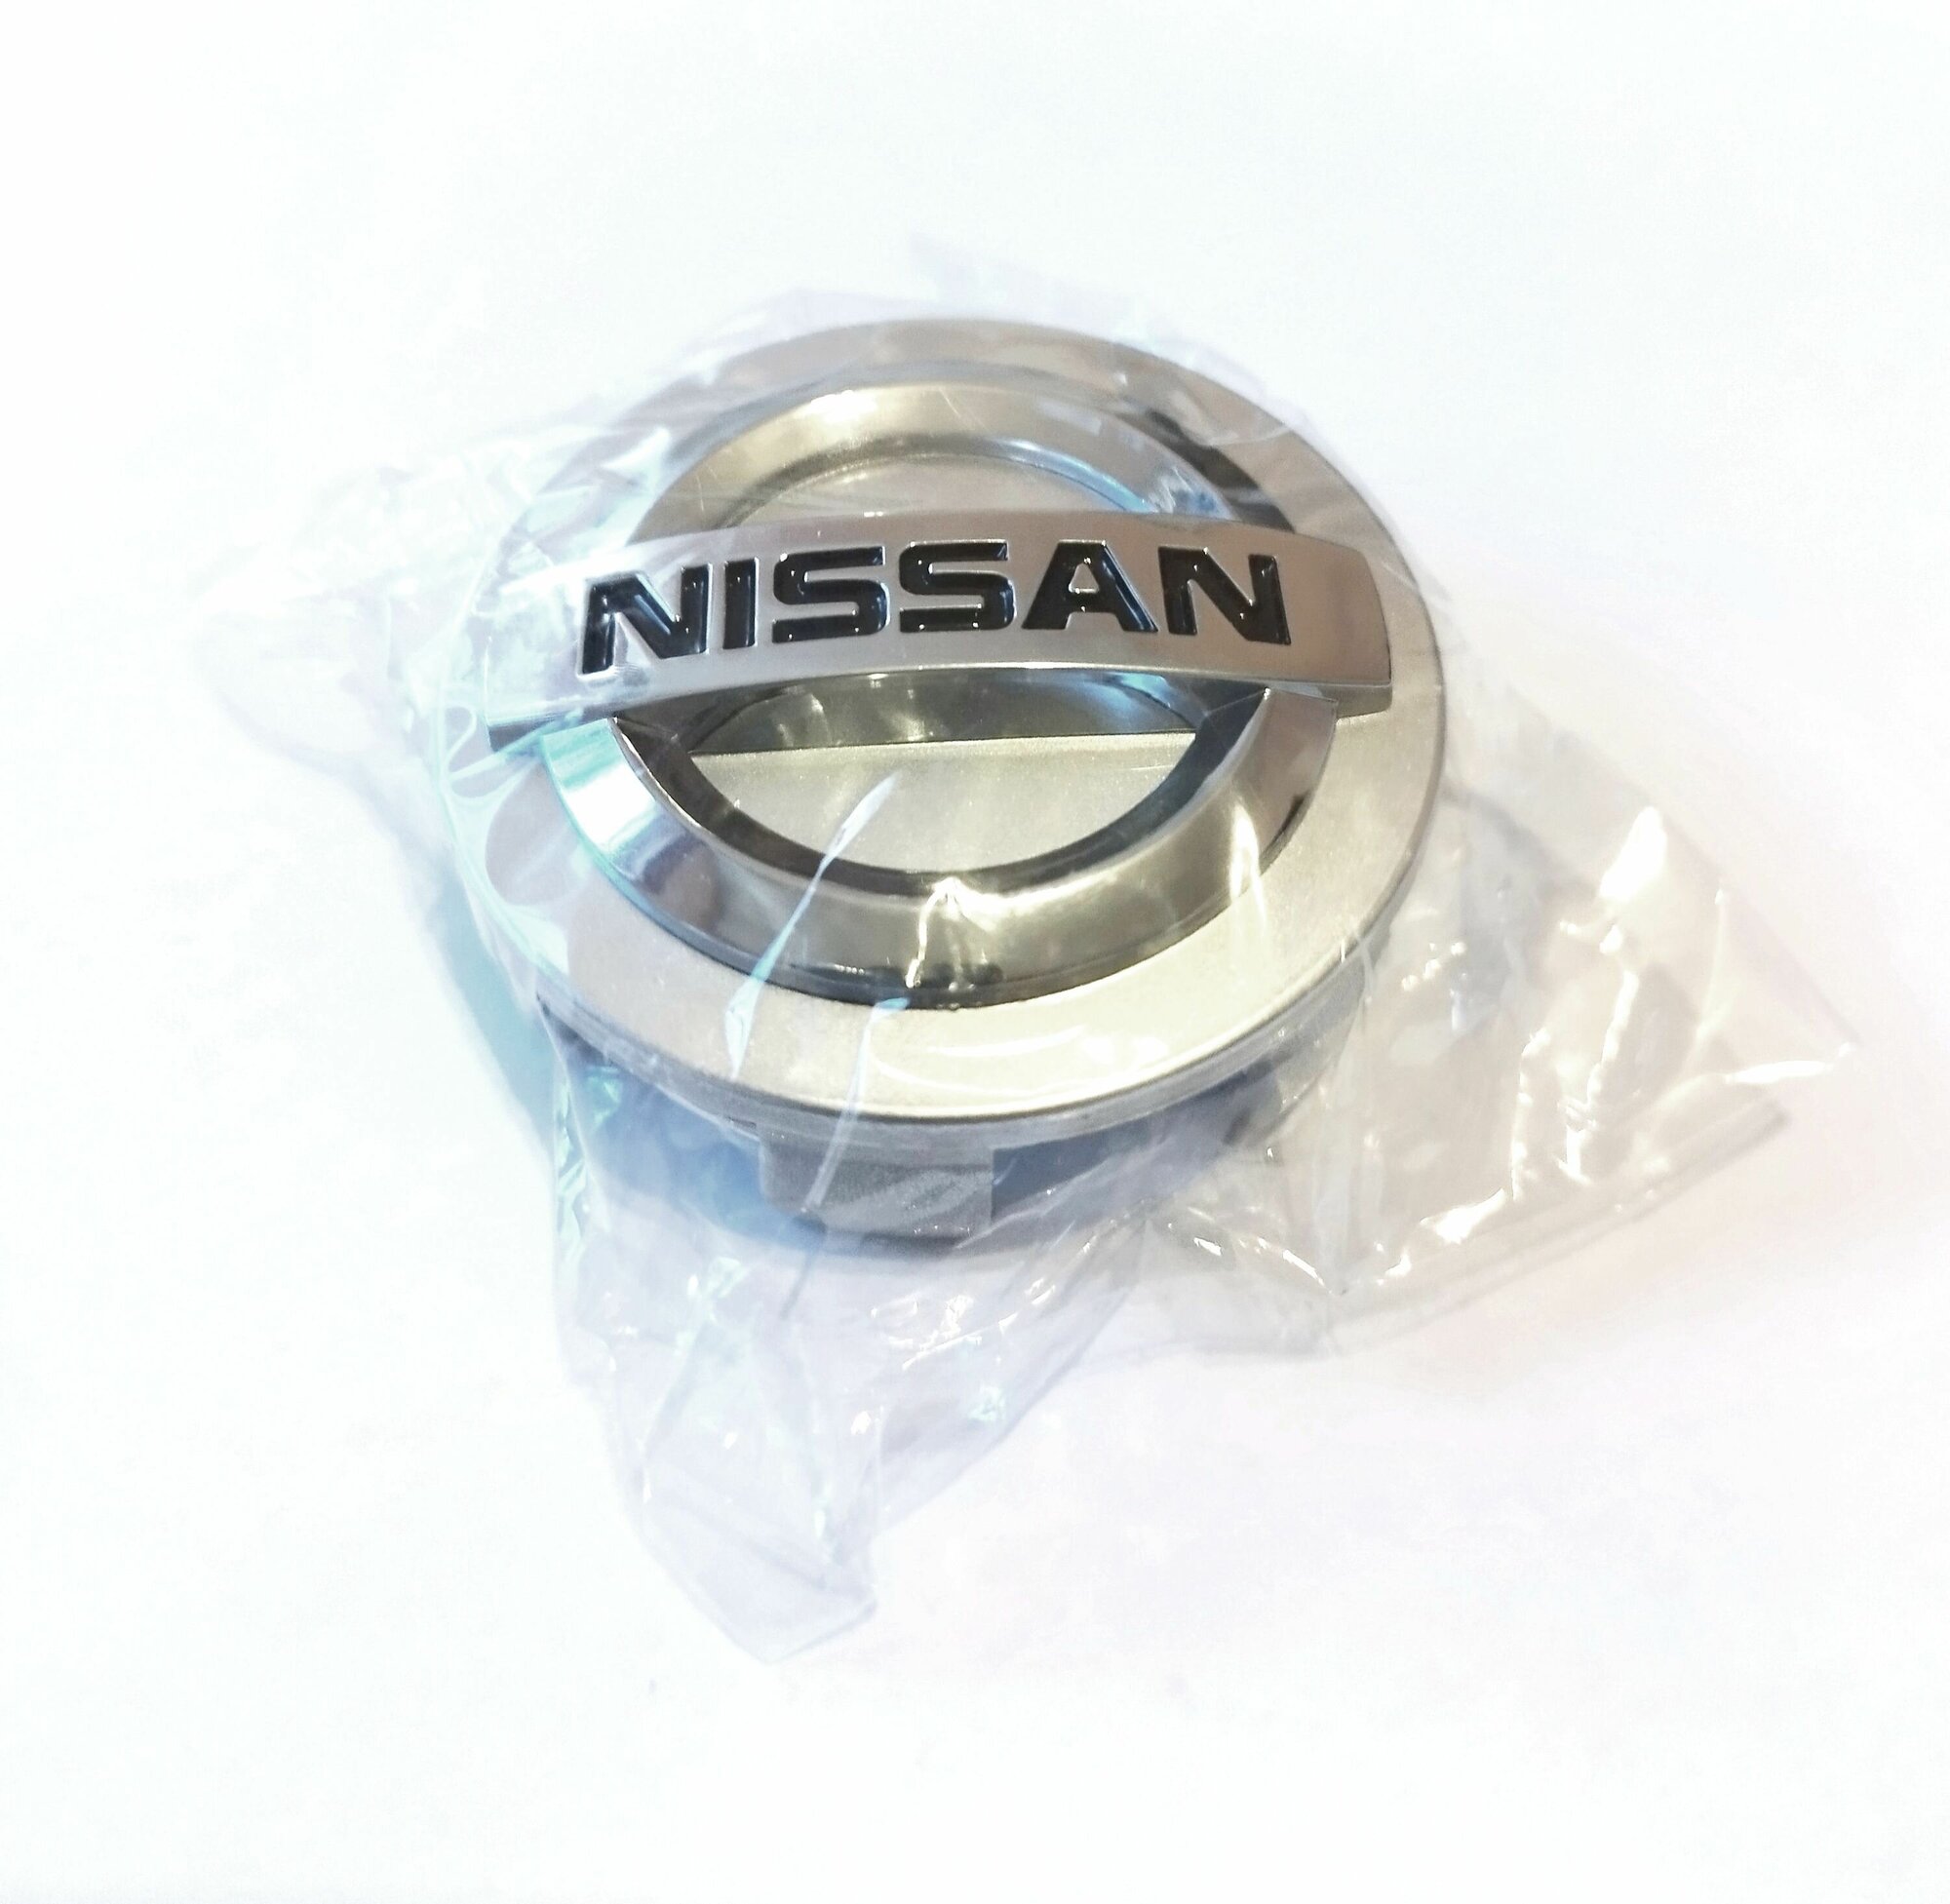 Заглушка диска/Колпачок ступицы литого диска Nissan Ниссан 60-56-14 мм цвет серебристый 4 штуки